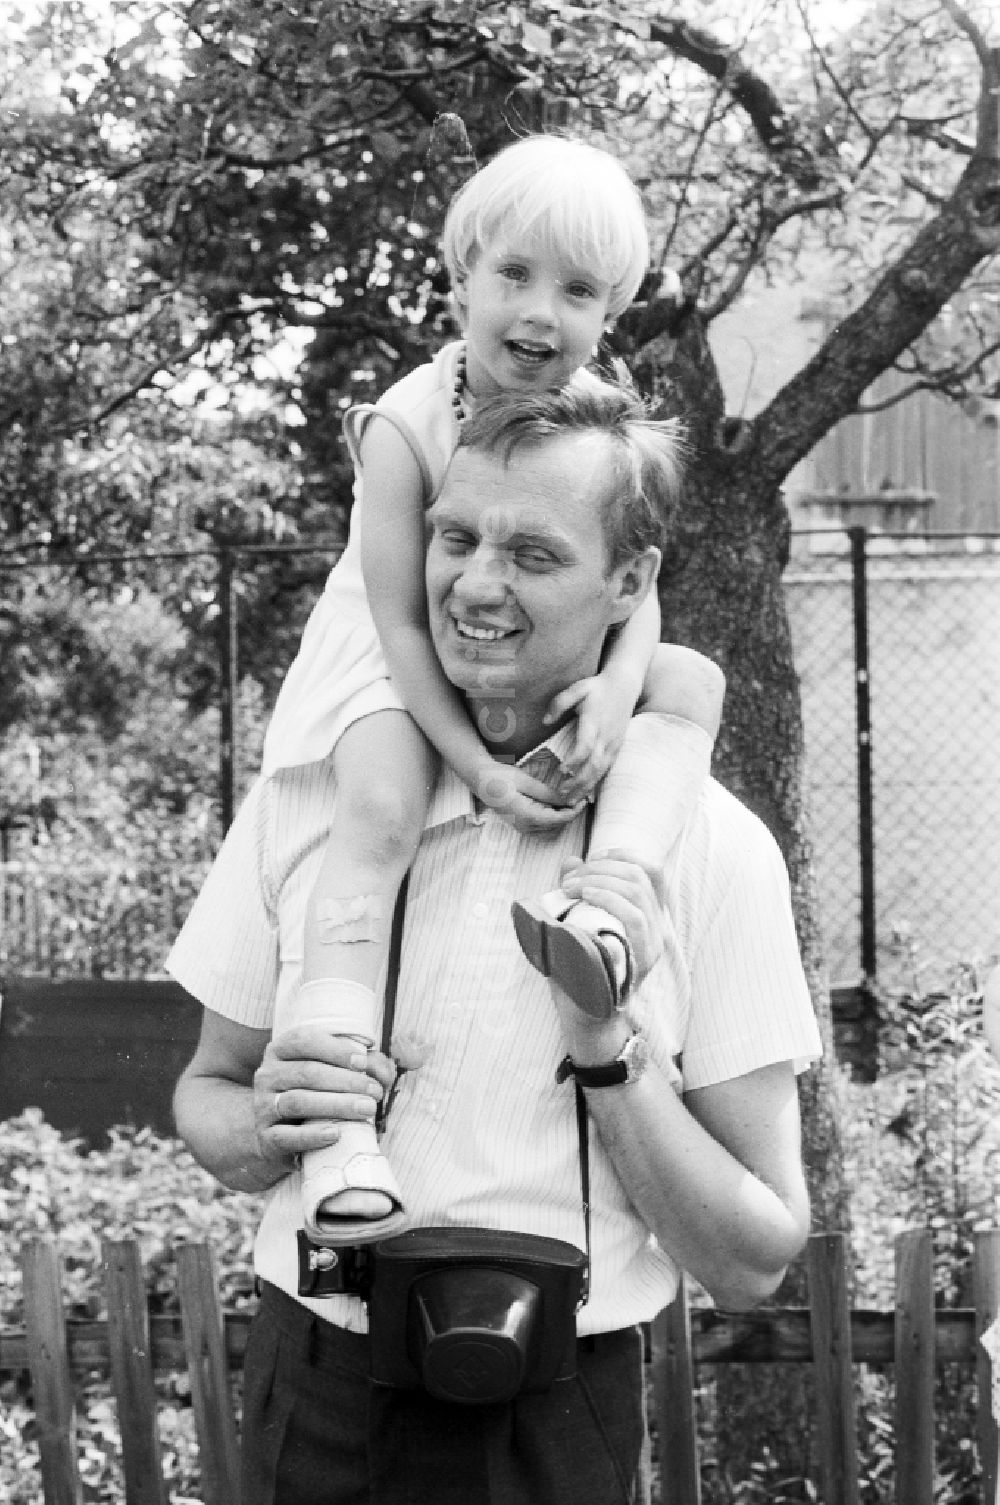 DDR-Fotoarchiv: Halle (Saale) - Vater mit Kind auf einem Spielplatz in Halle (Saale) in Sachsen-Anhalt in der DDR